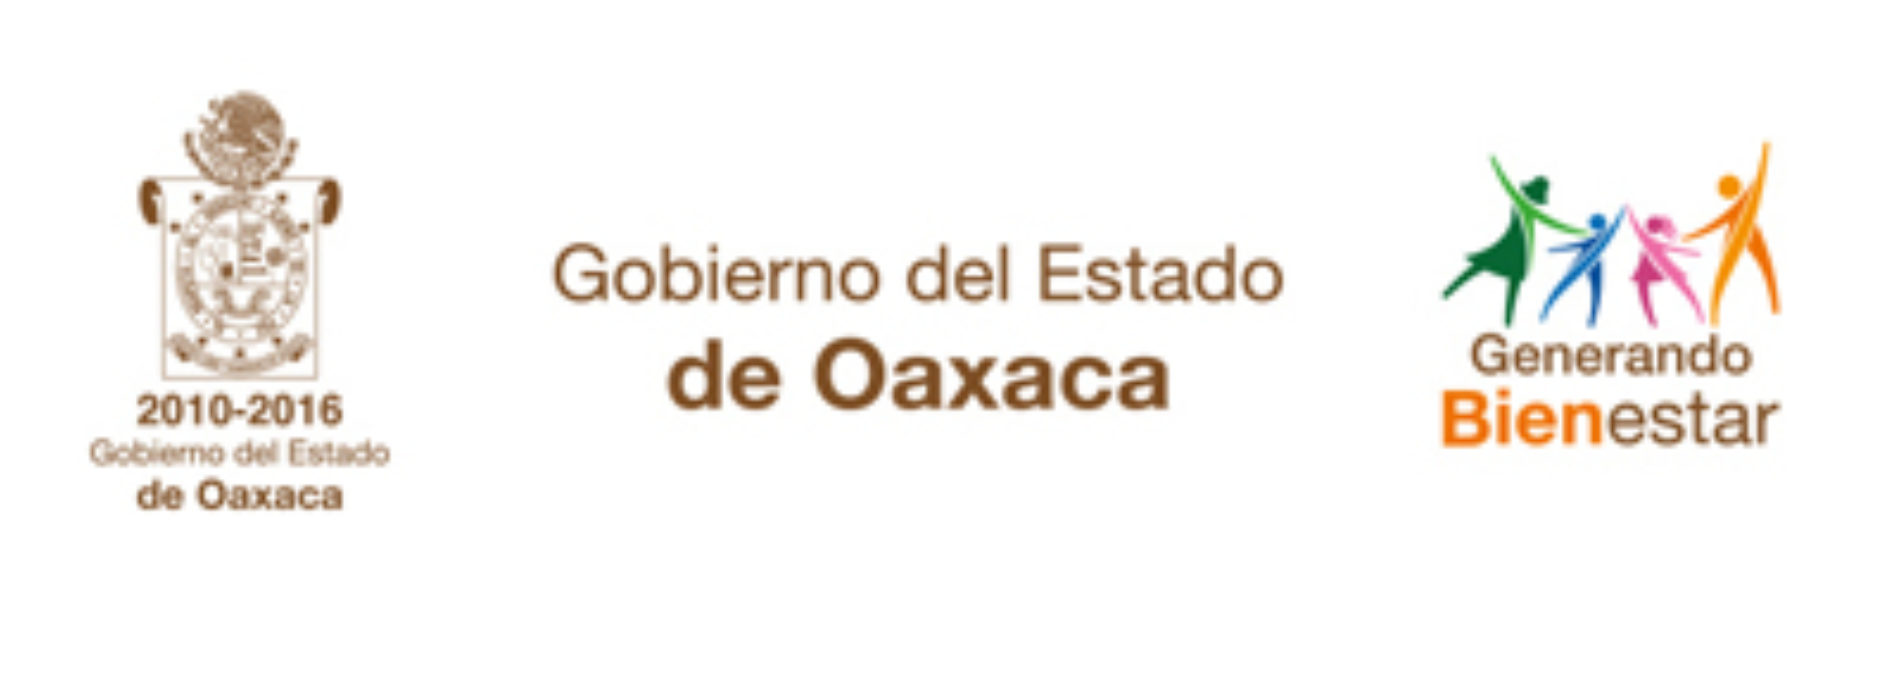 Gobierno de Oaxaca no interviene en la selección de candidatos ni apoya a partidos políticos